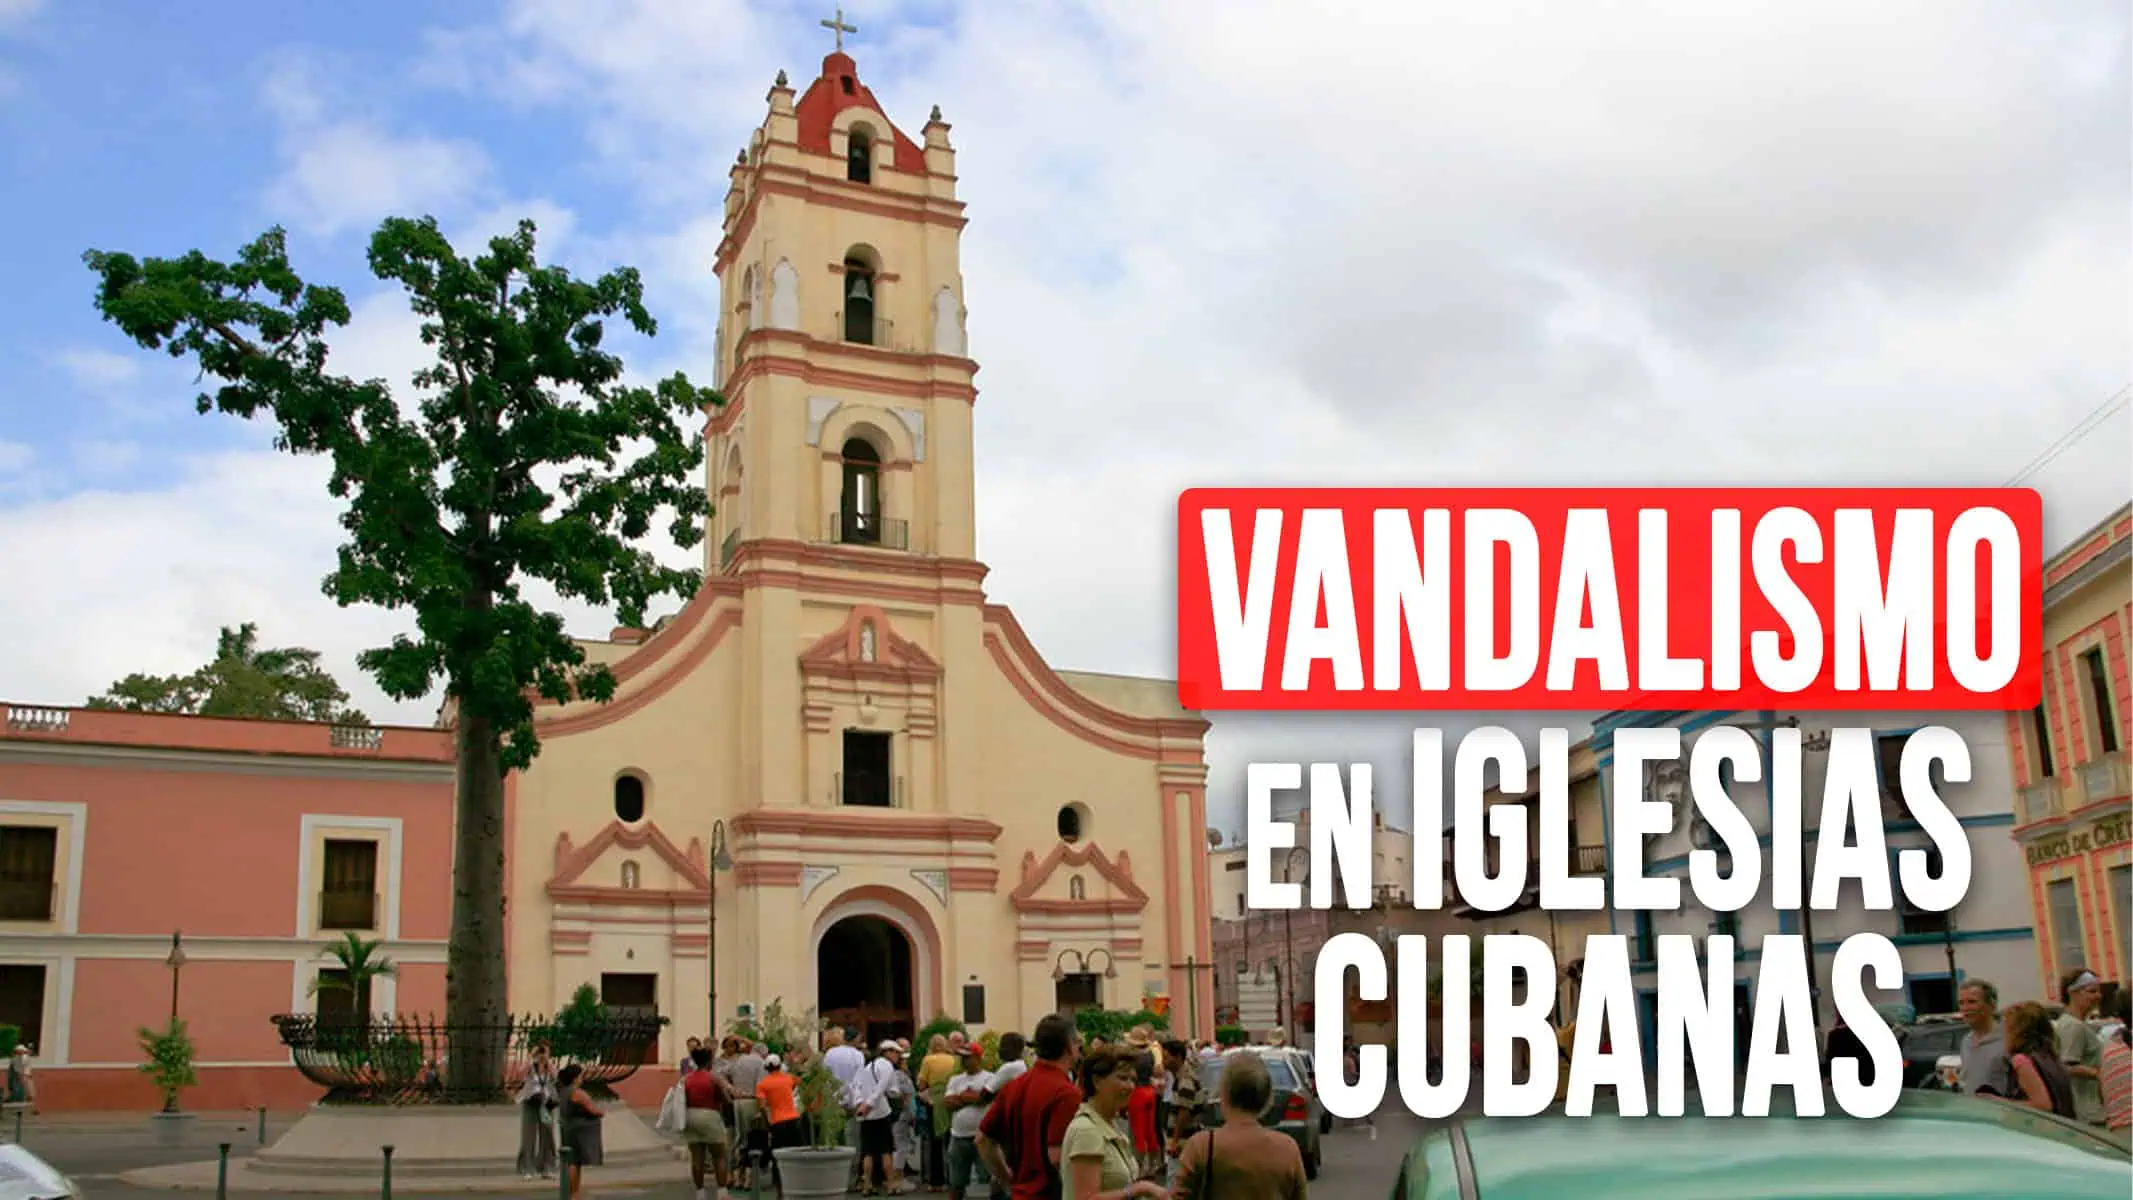 Vandalismo en Iglesias Cubanas: La Preocupación Llegó al Vaticano